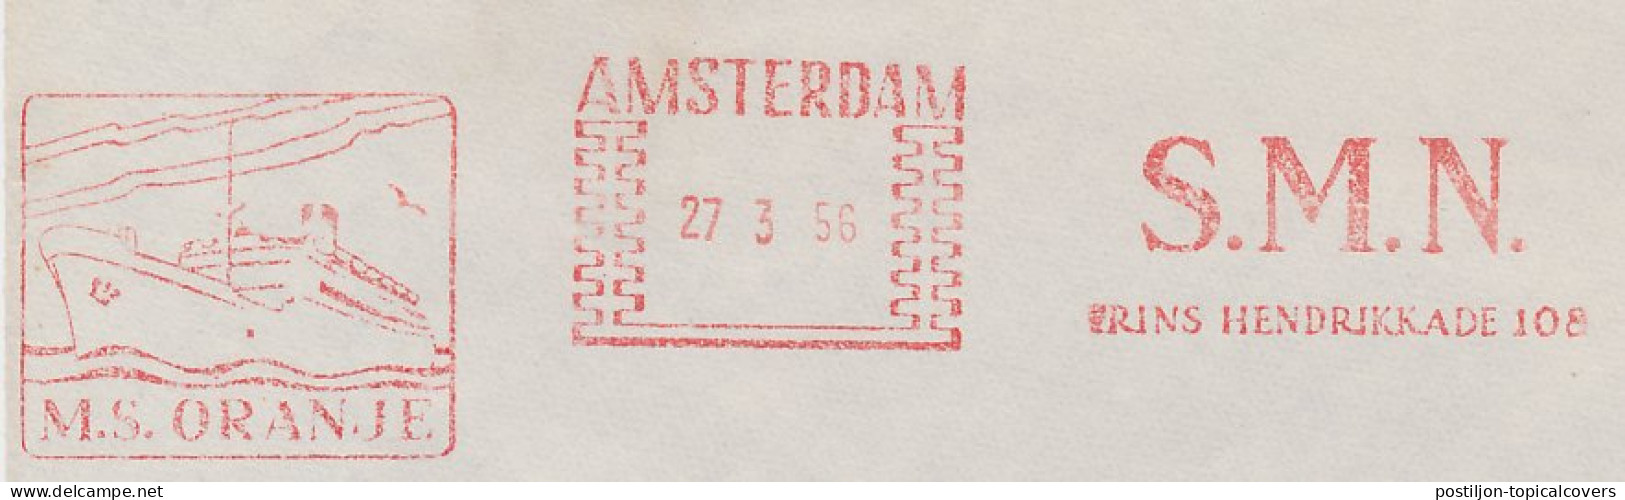 Meter Cover Netherlands 1956 SMN - Steamship Company Netherlands - M.S. Oranje - Ships